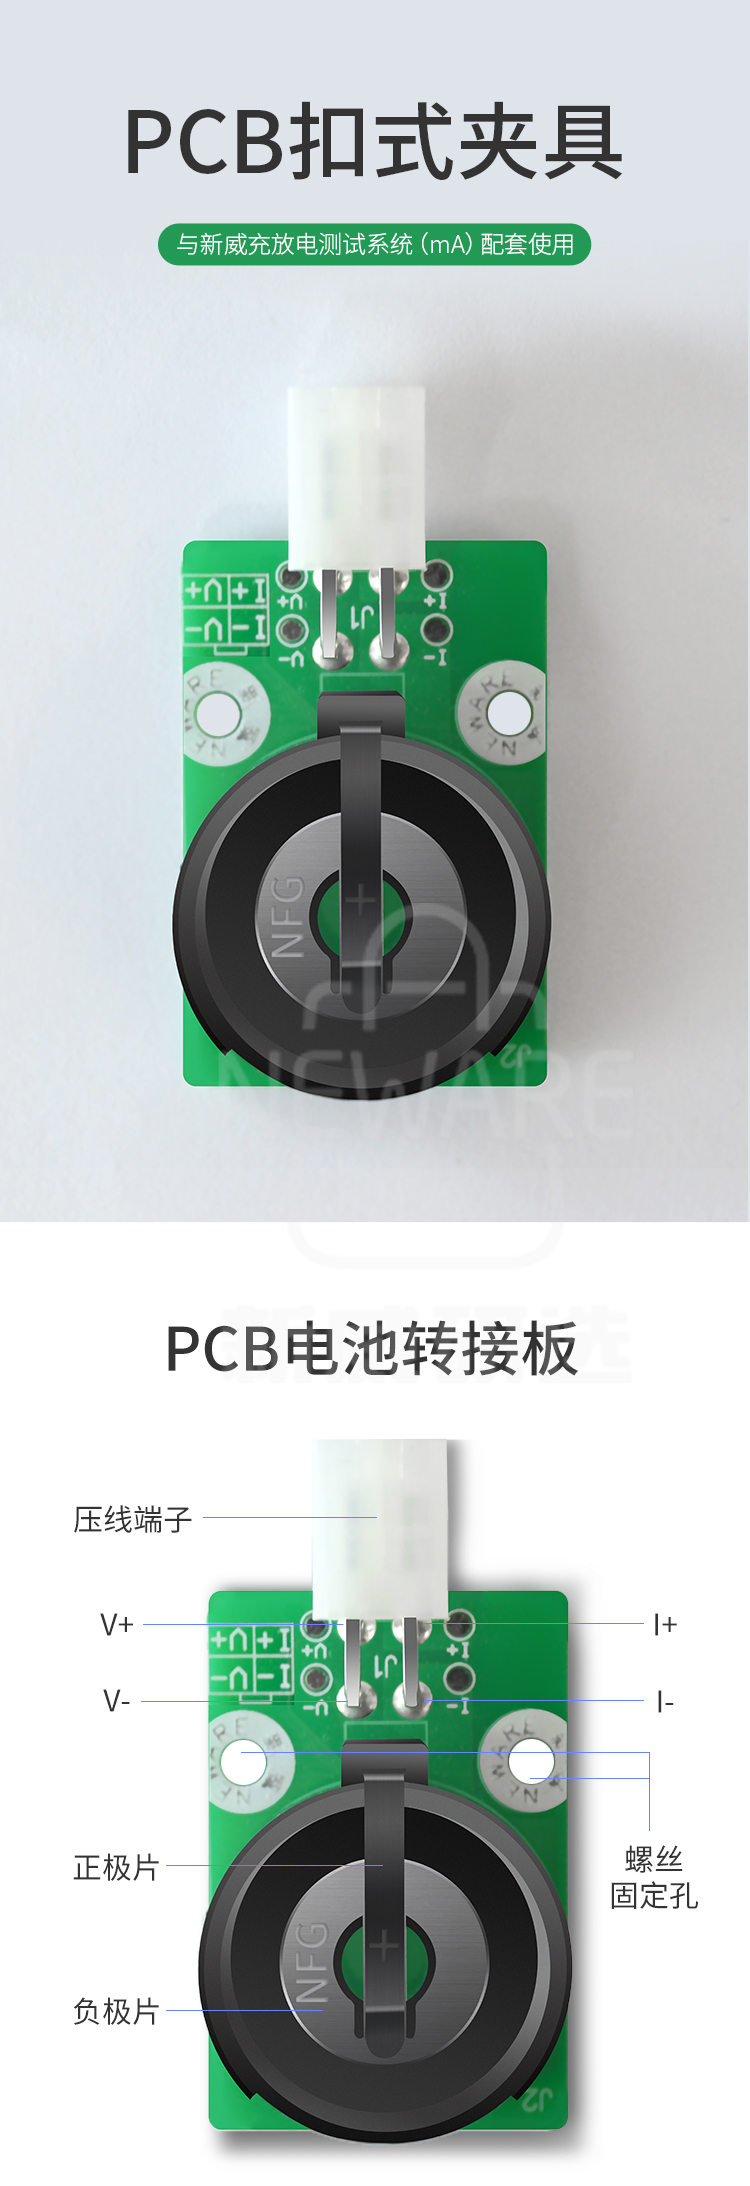 PCB扣式夹具的组成介绍